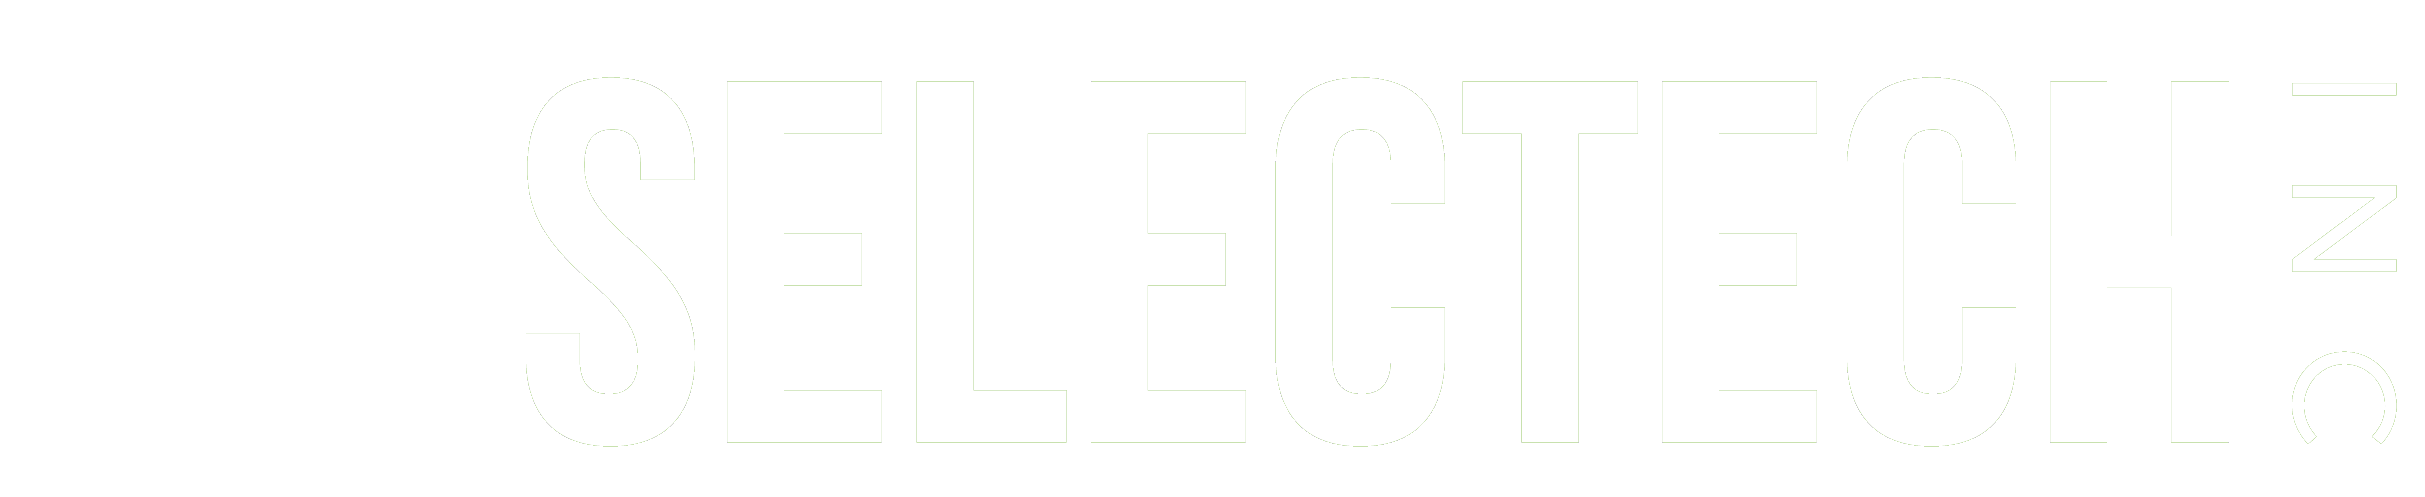 SelecTech Logo White